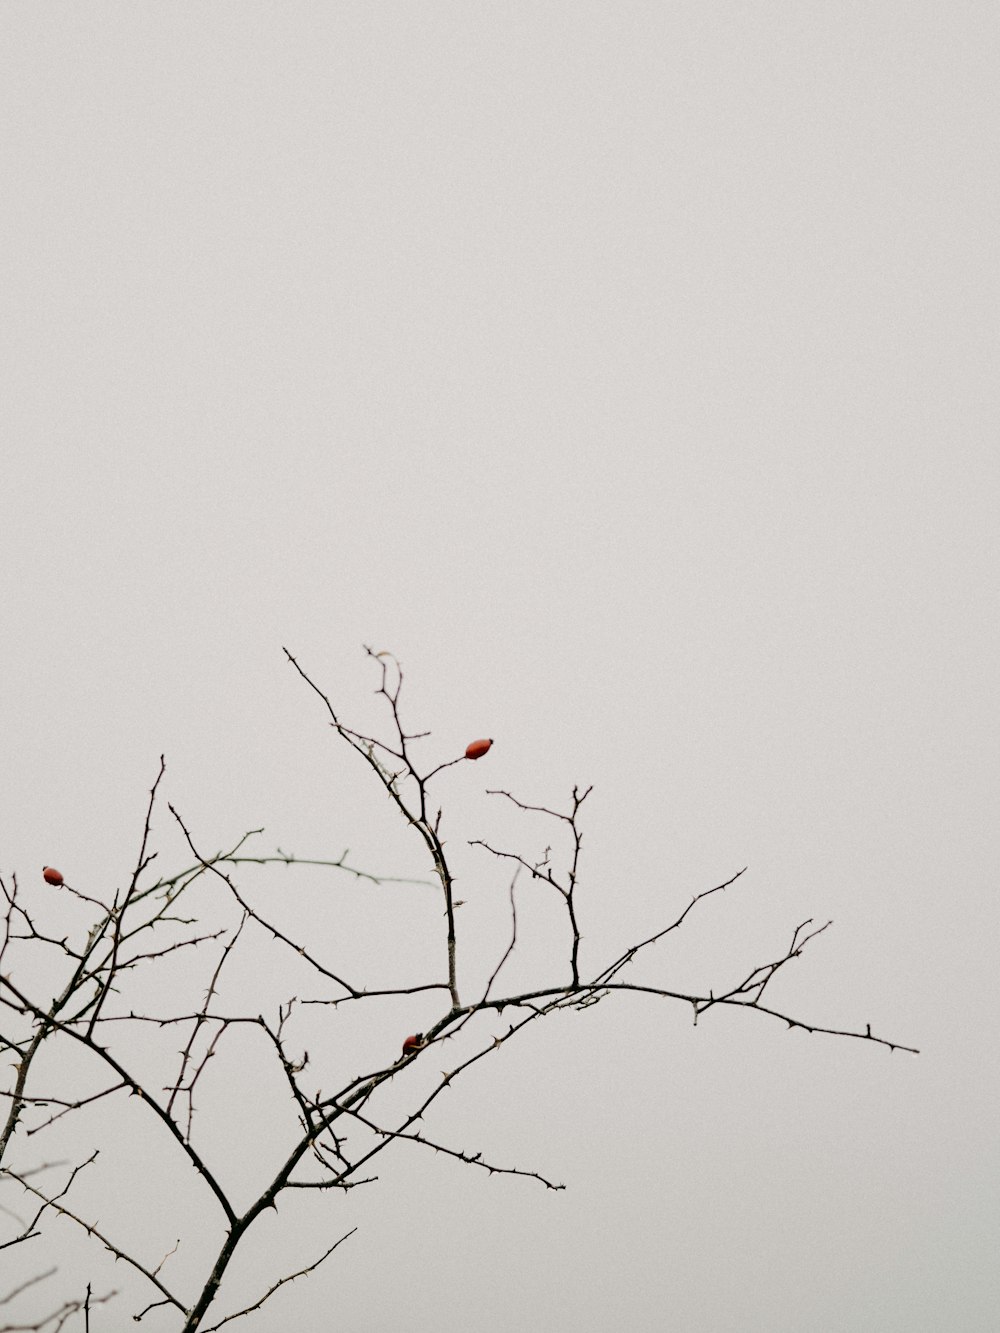 갈색 나뭇가지에 붉은 새